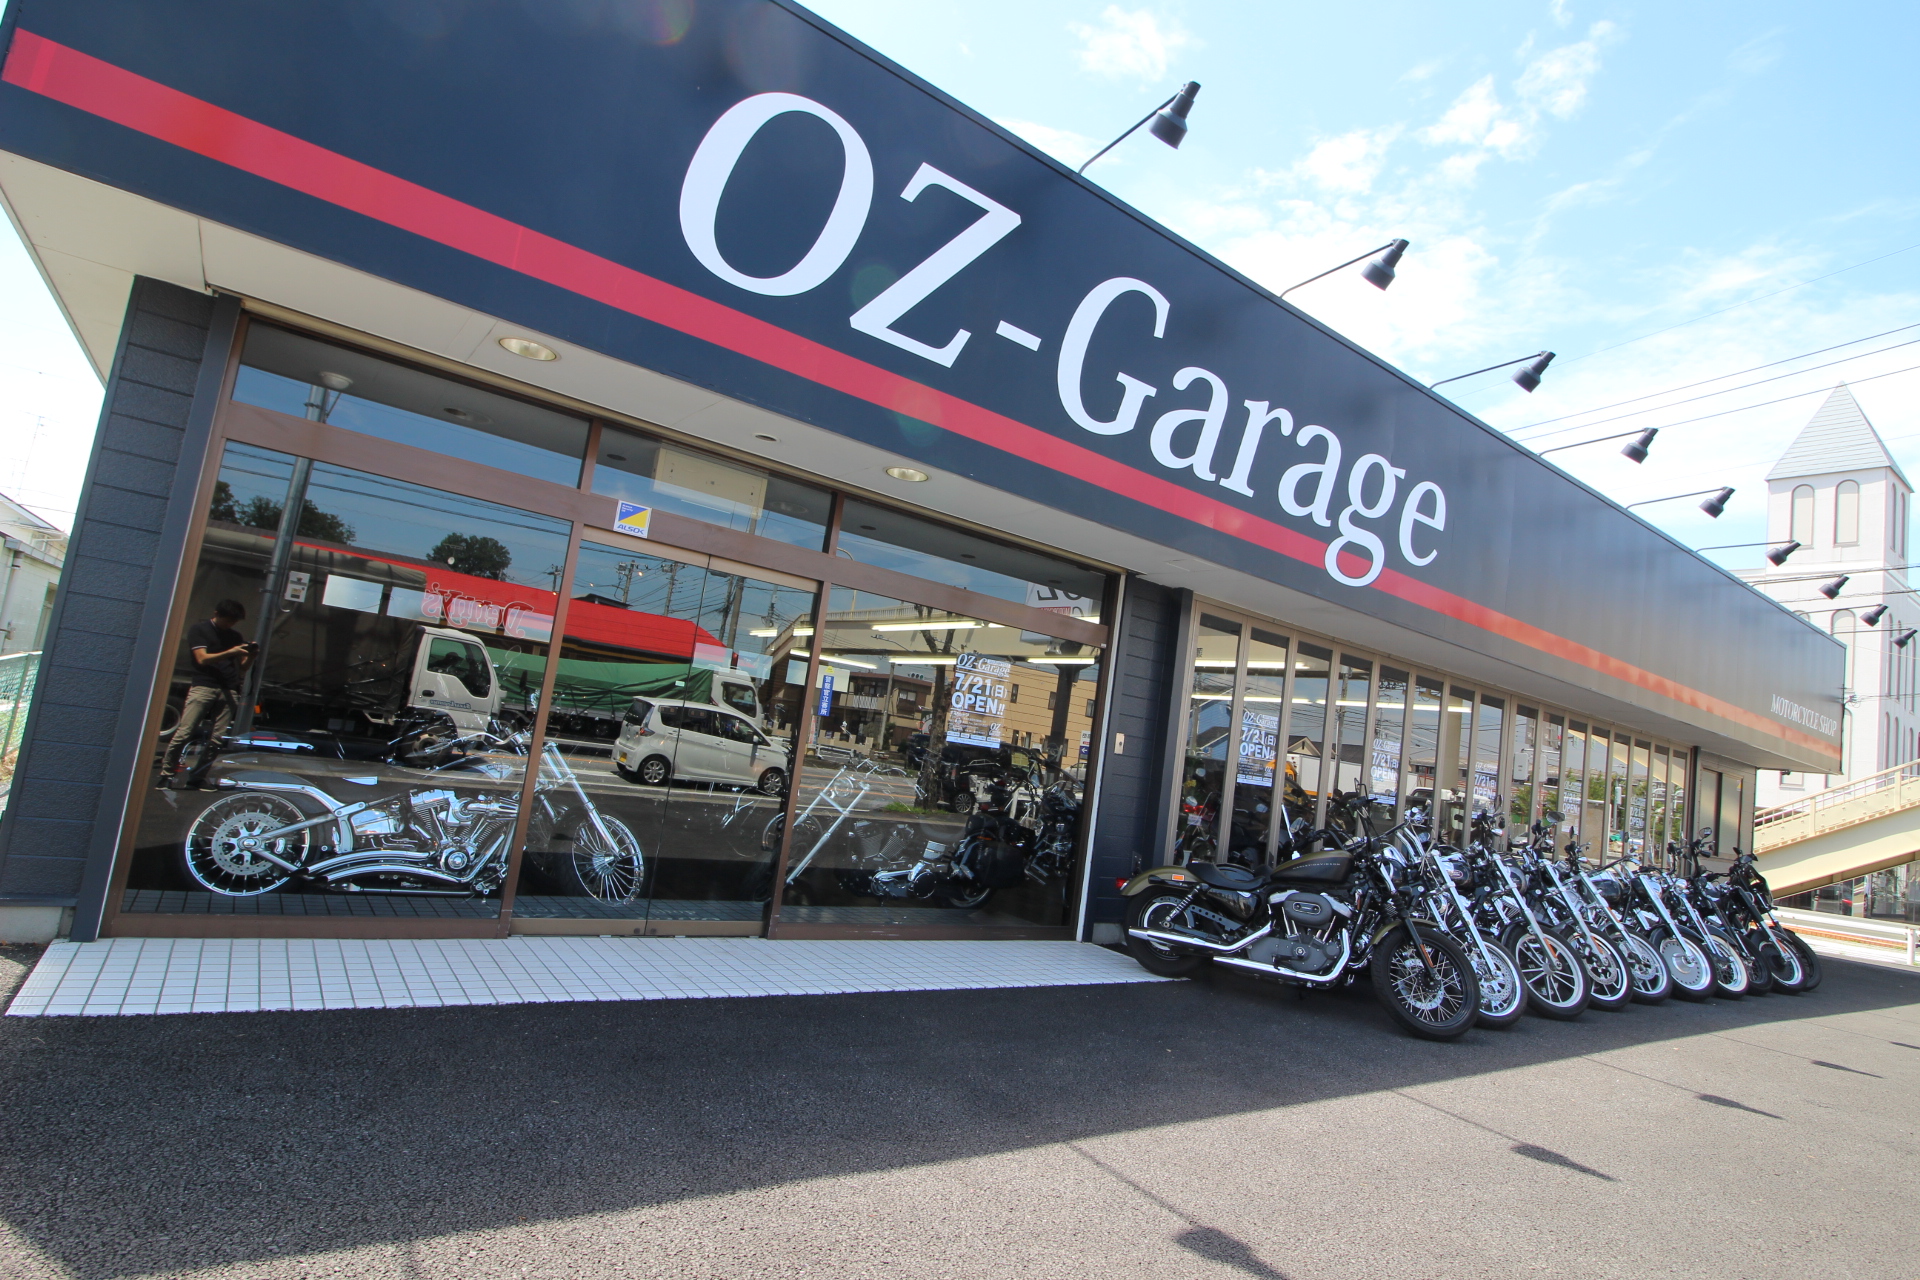 OZ-garage